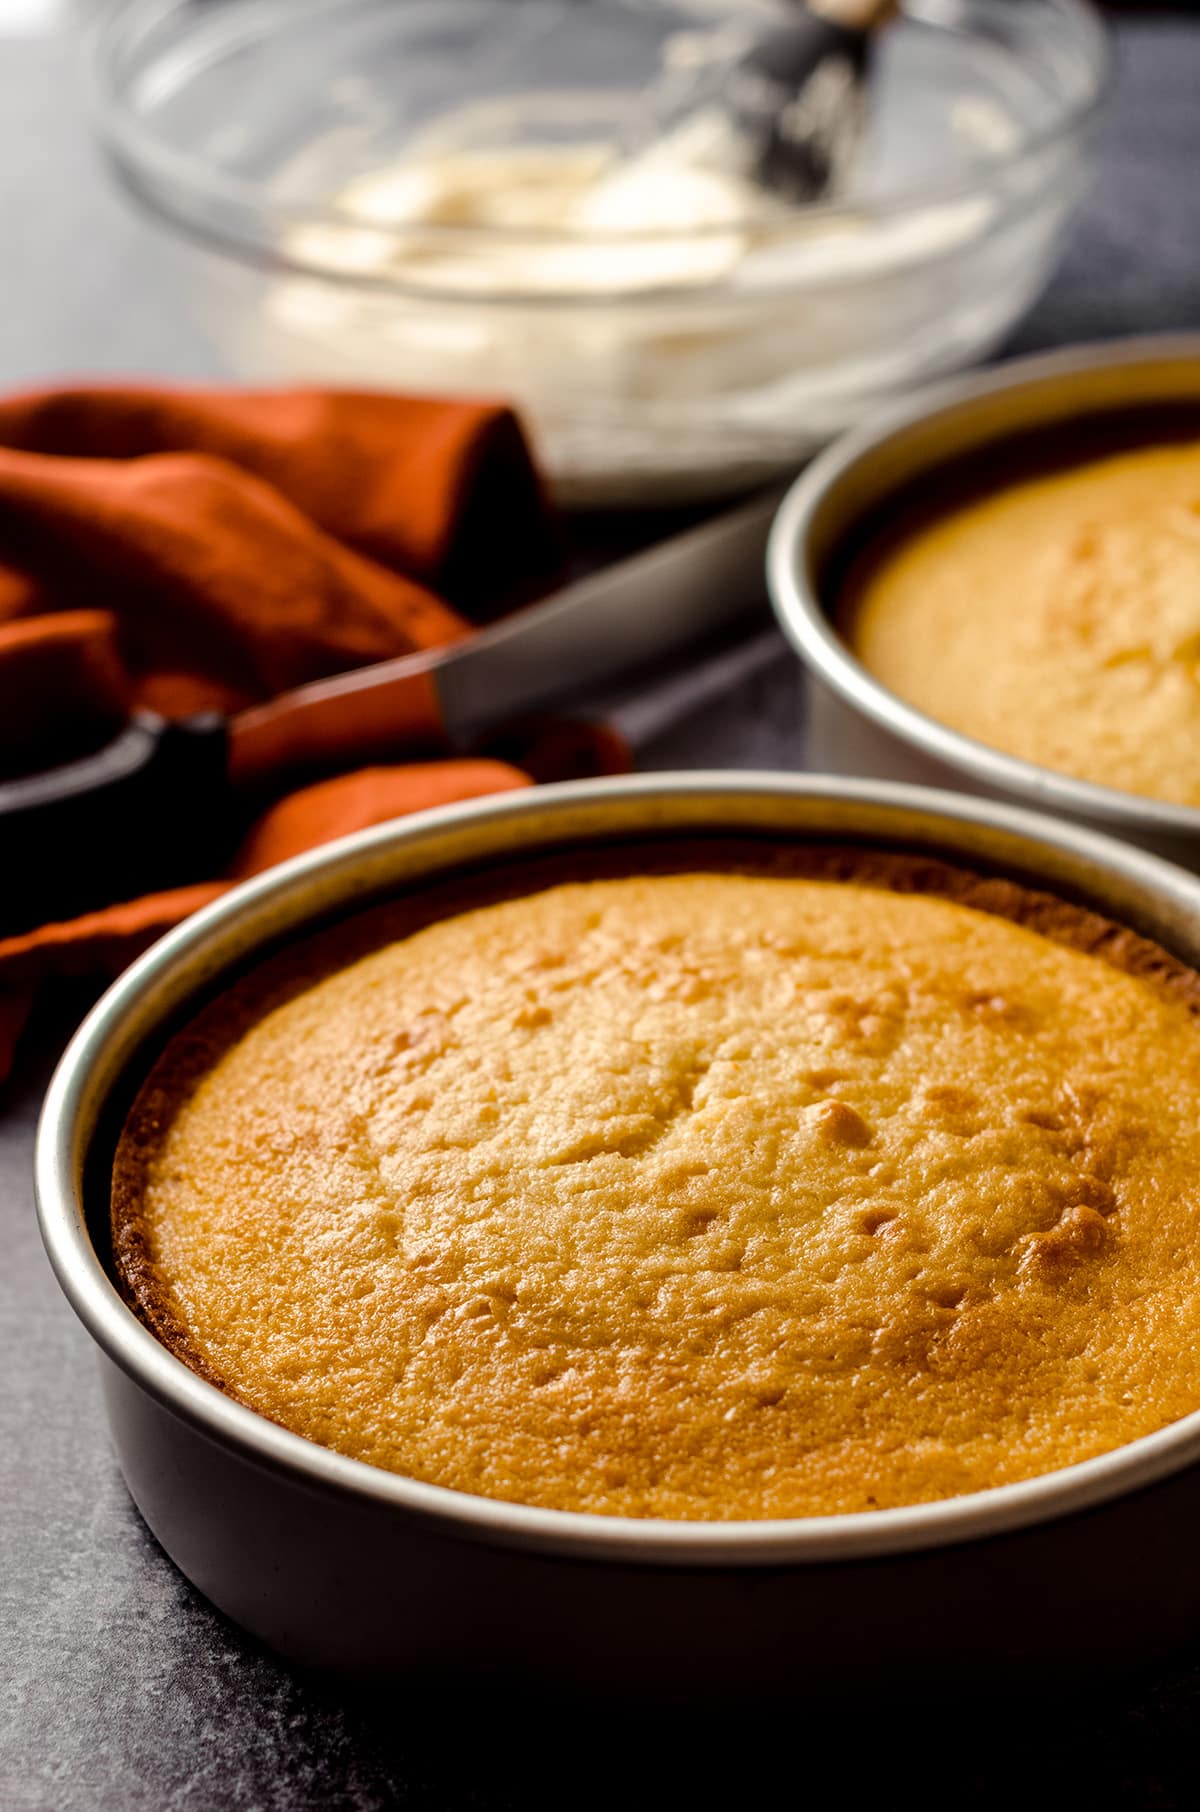 orange creamsicle layer cake baked in a baking pan